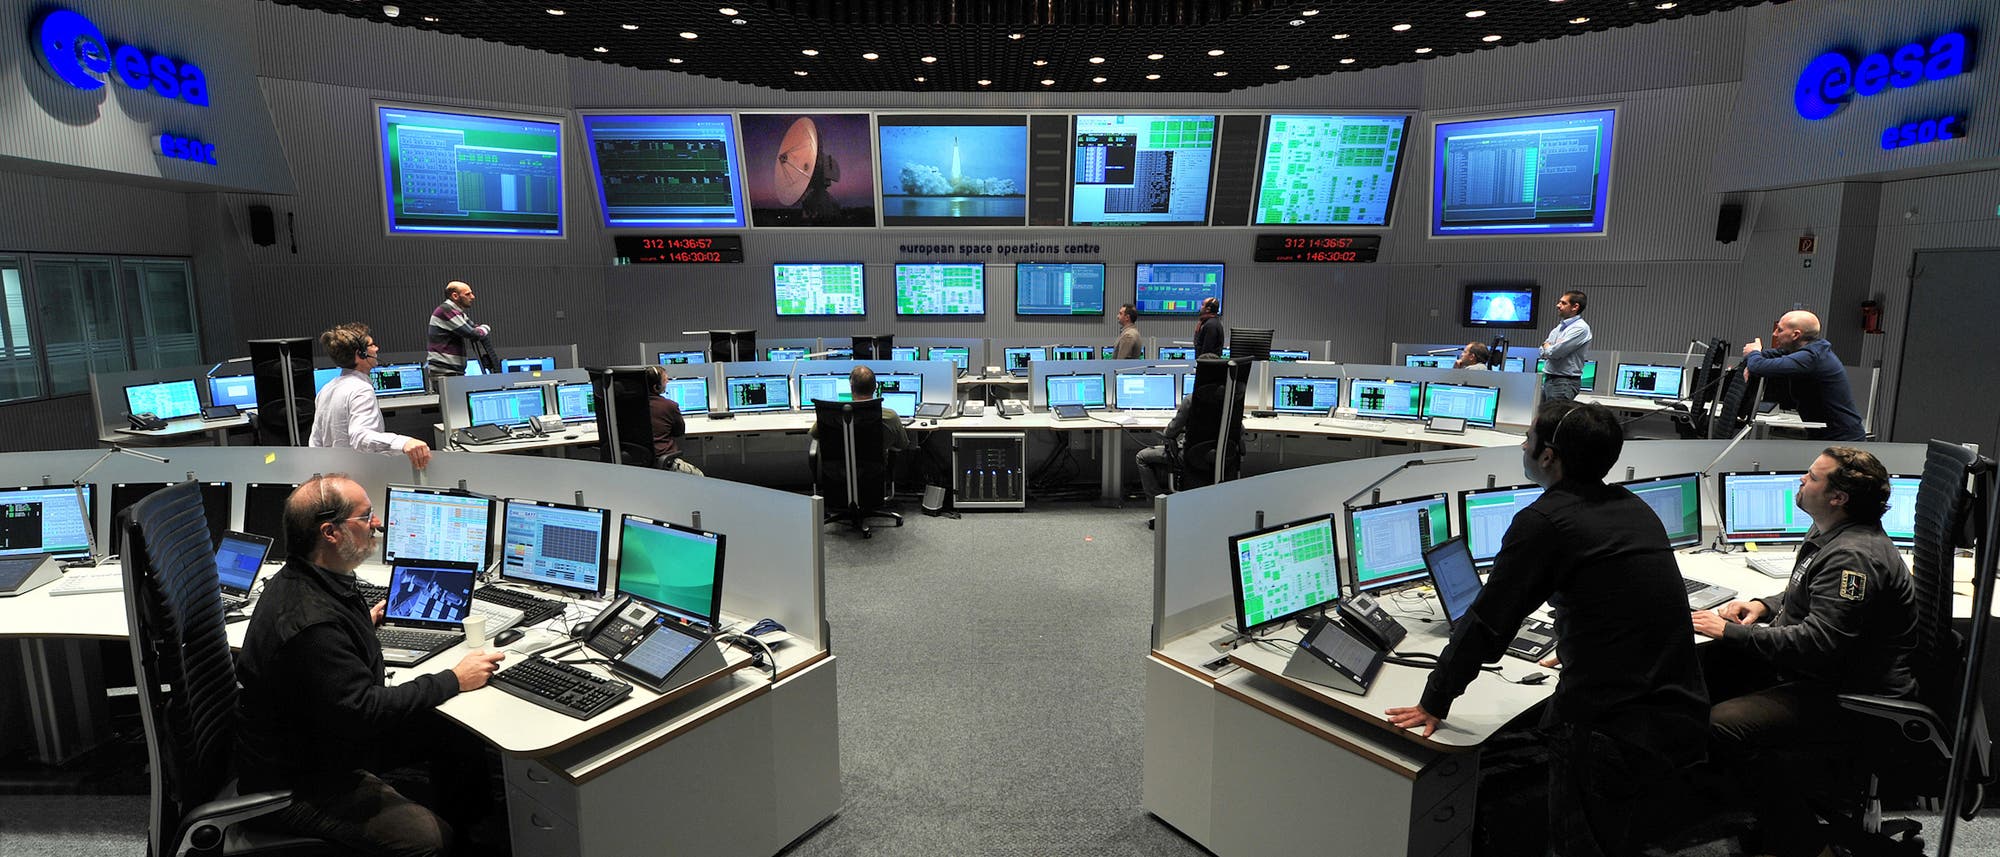 Der Main Control Room des European Space Operations Centre (ESOC) mit vielen Bildschirmen und Arbeitsplätzen.